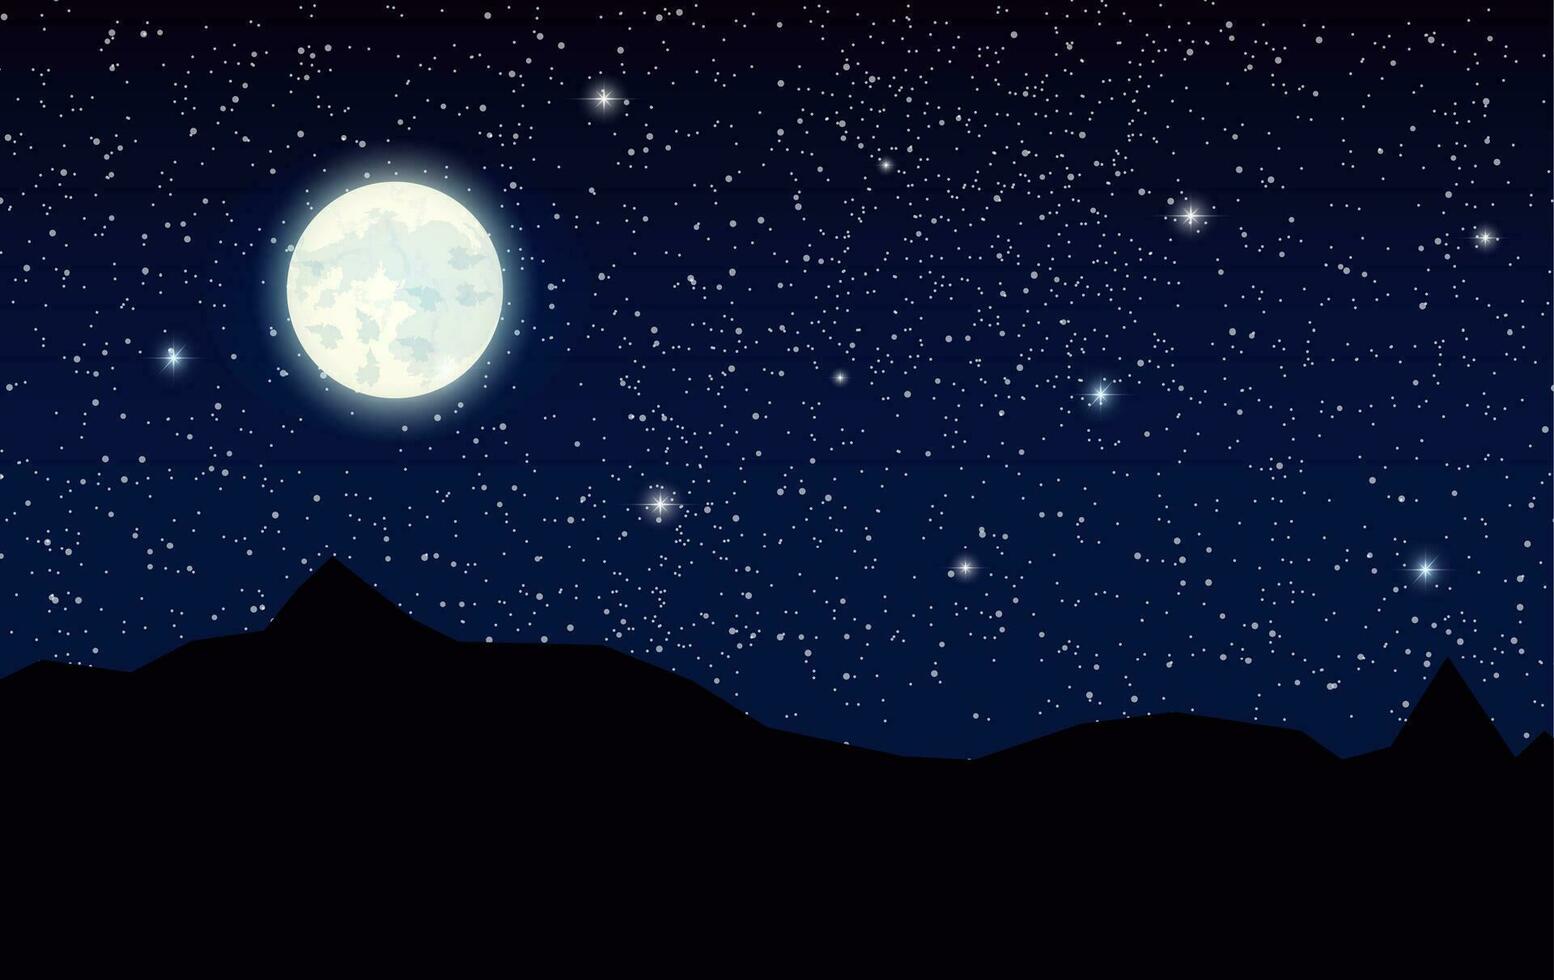 Raum Landschaft mit Silhouette Berge und voll Mond. Himmel mit Sterne. Vektor Illustration